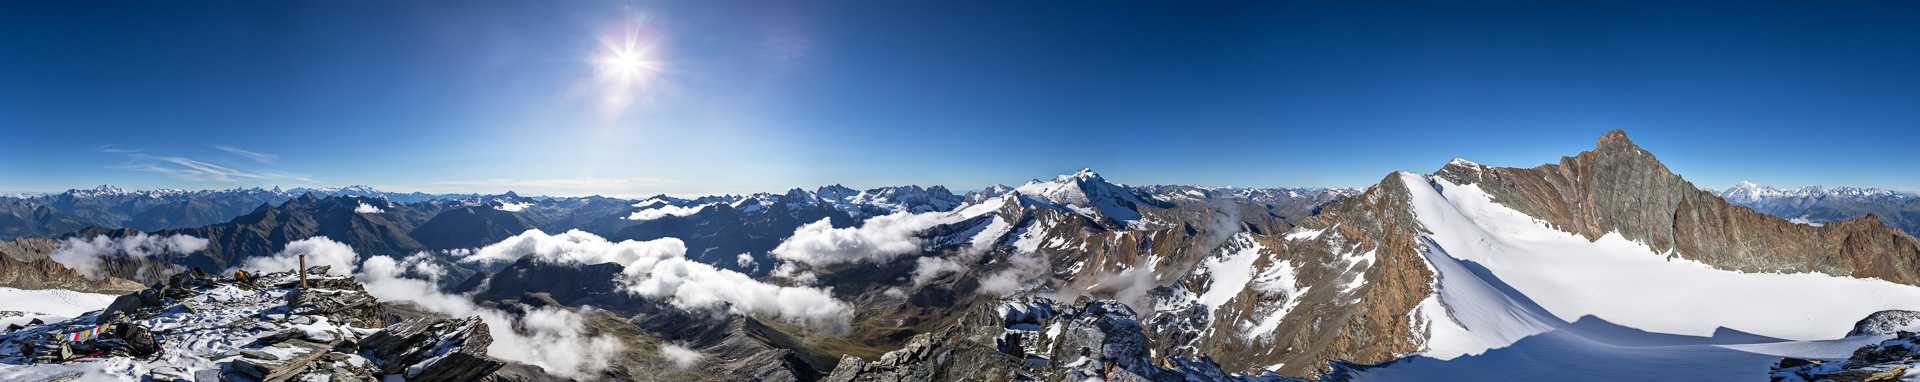 Gipfelpanorama - vom Wallis zum Gran Paradiso mit exzellenter Fernsicht.